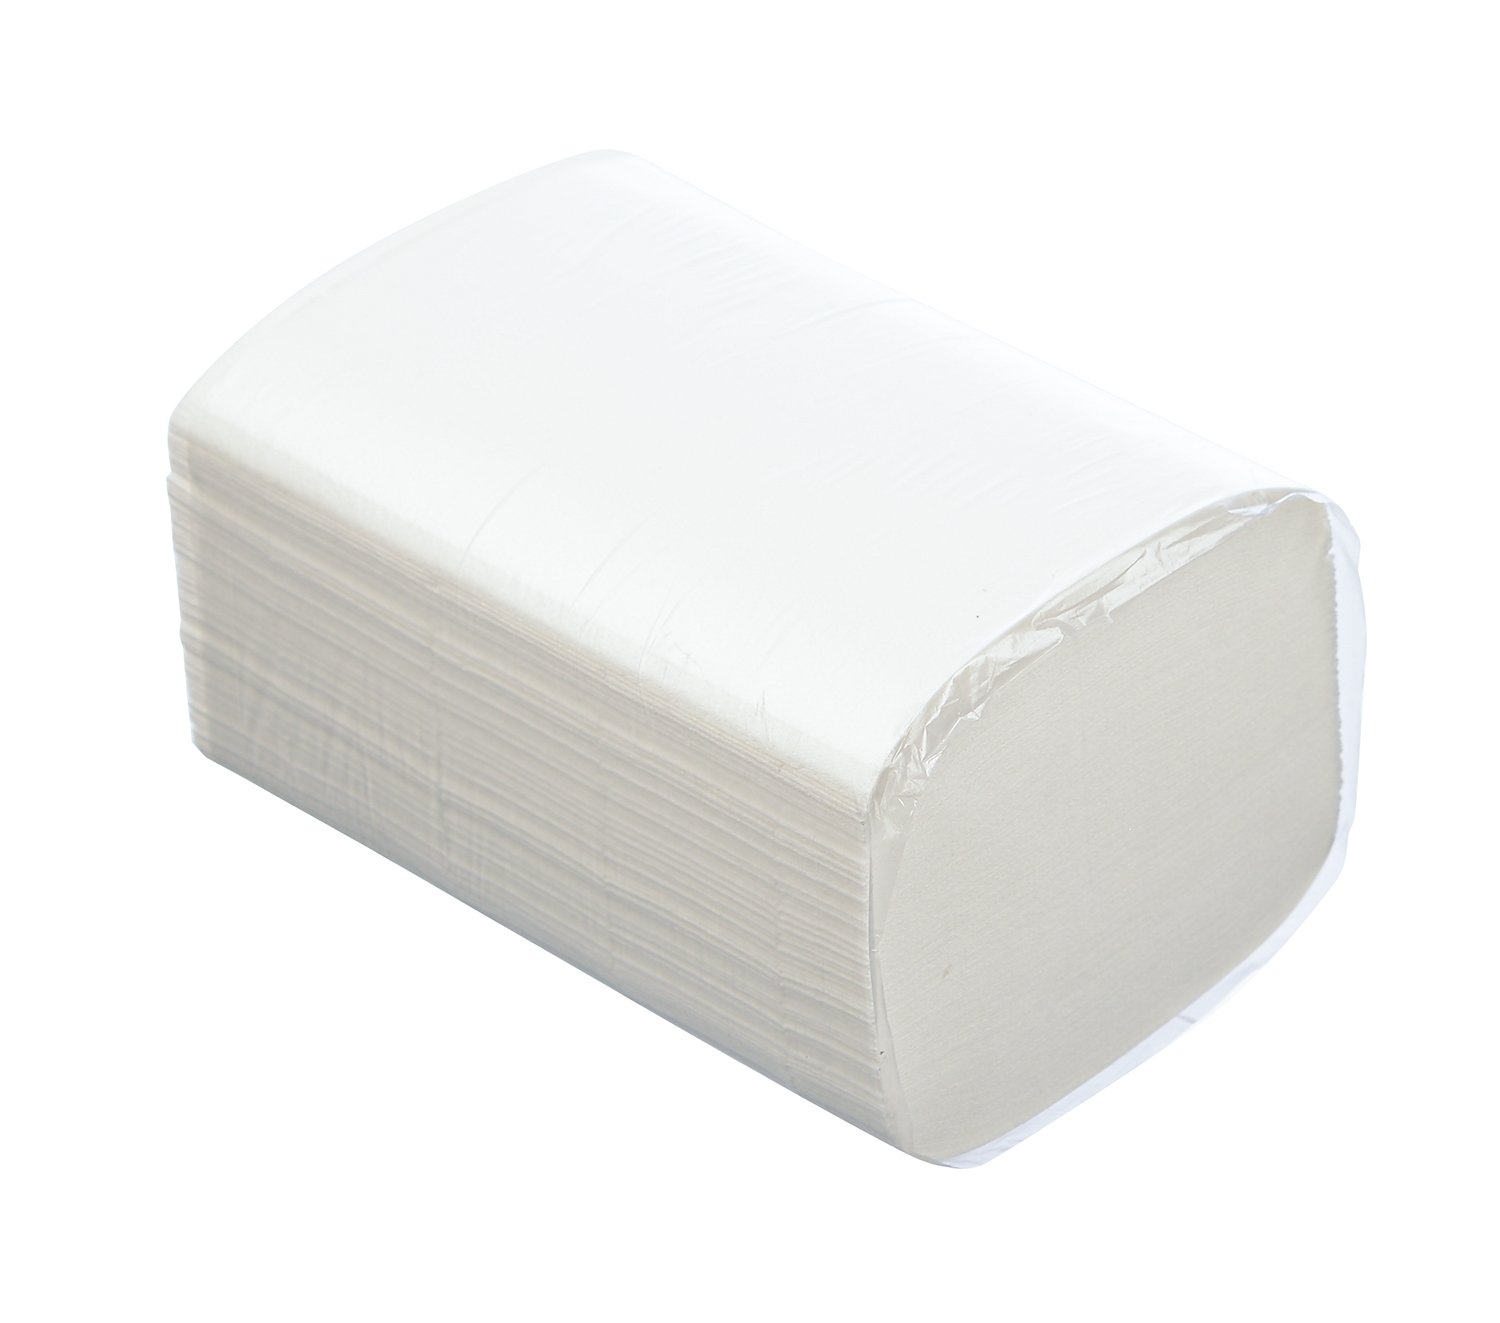 Салфетки бумажные двуслойные, 1/2 сложения, для настольных диспенсеров. Бумажные салфетки могут быть использованы также в целях личной гигиены. В упаковке 200 салфеток, размер 15,5х20 см. В коробке 16 упаковок.